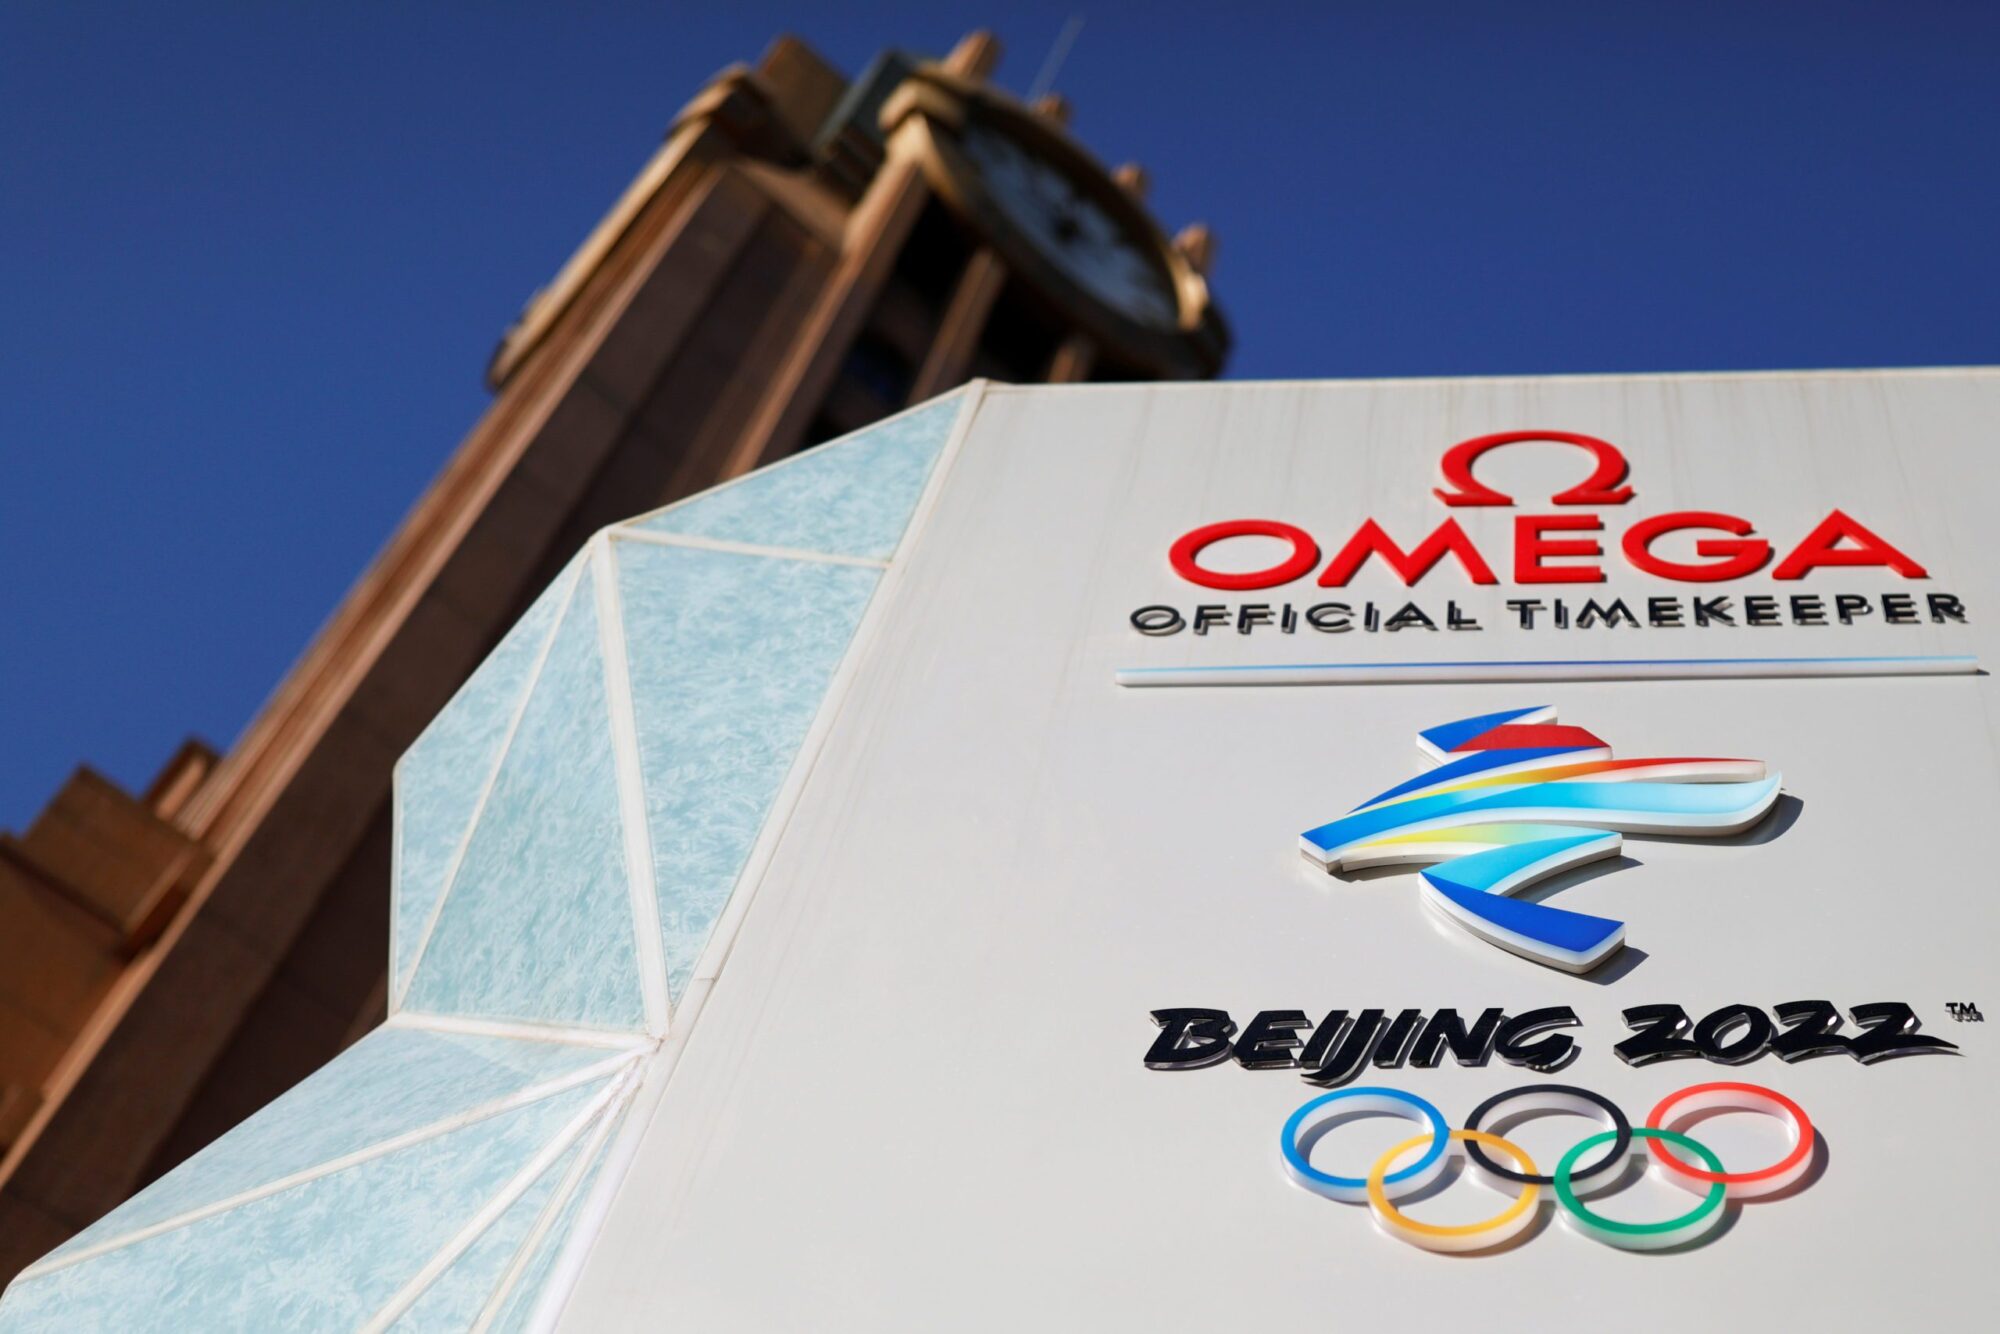 Australia joins diplomatic boycott of Beijing Winter Games